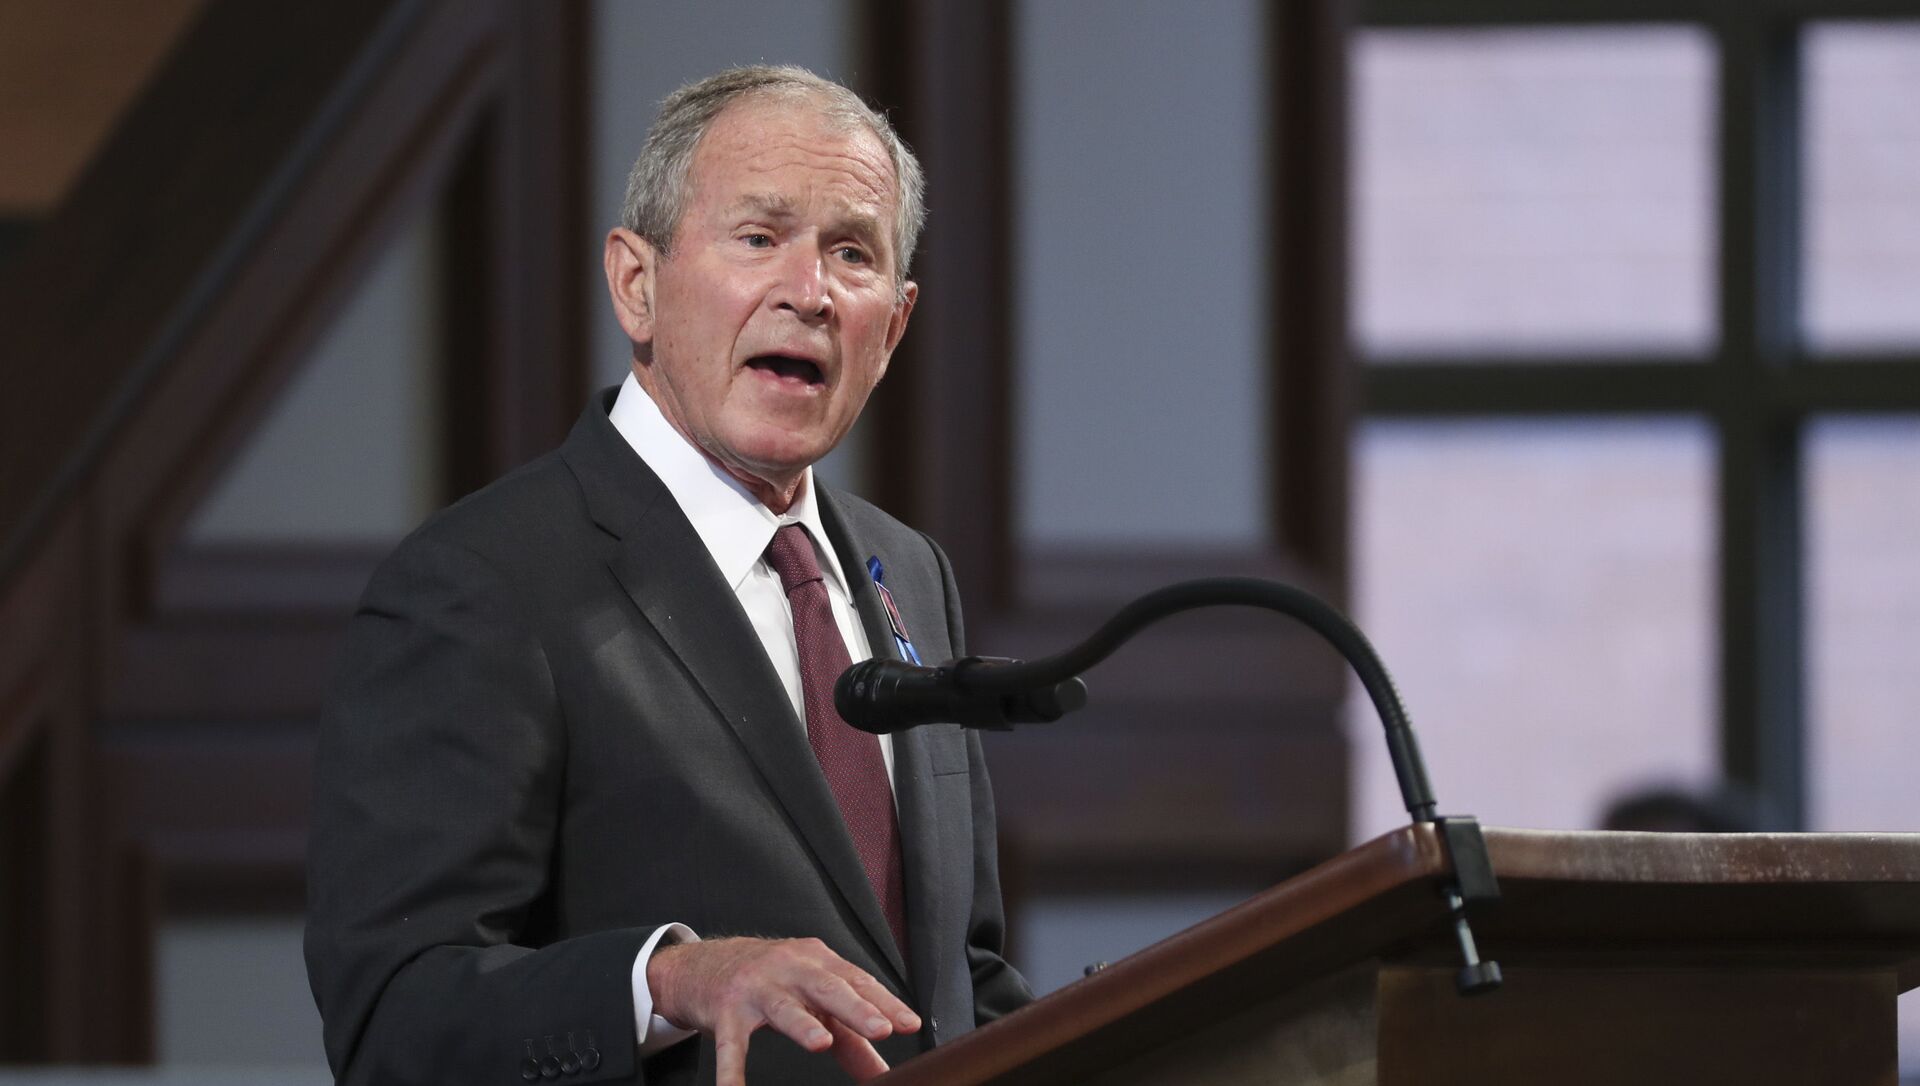 الرئيس الأمريكي السابق جورج بوش يصف غزو العراق بأنه “وحشي”